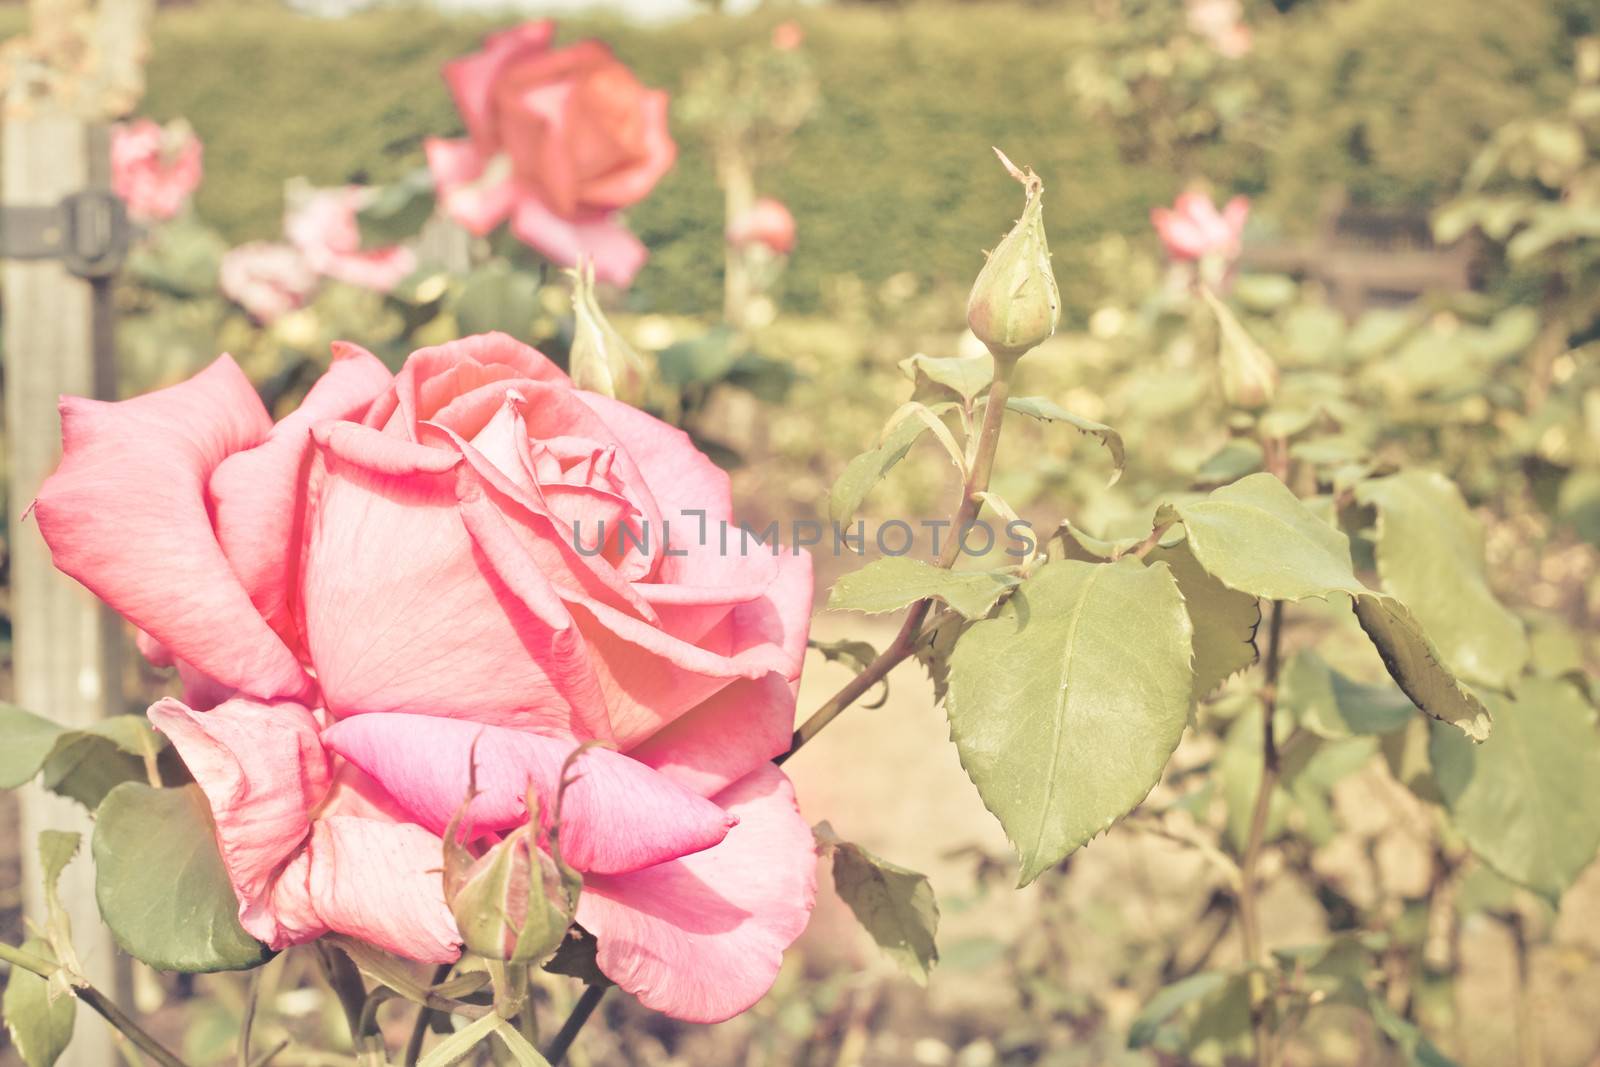 A blooming summer rose in vintage tones